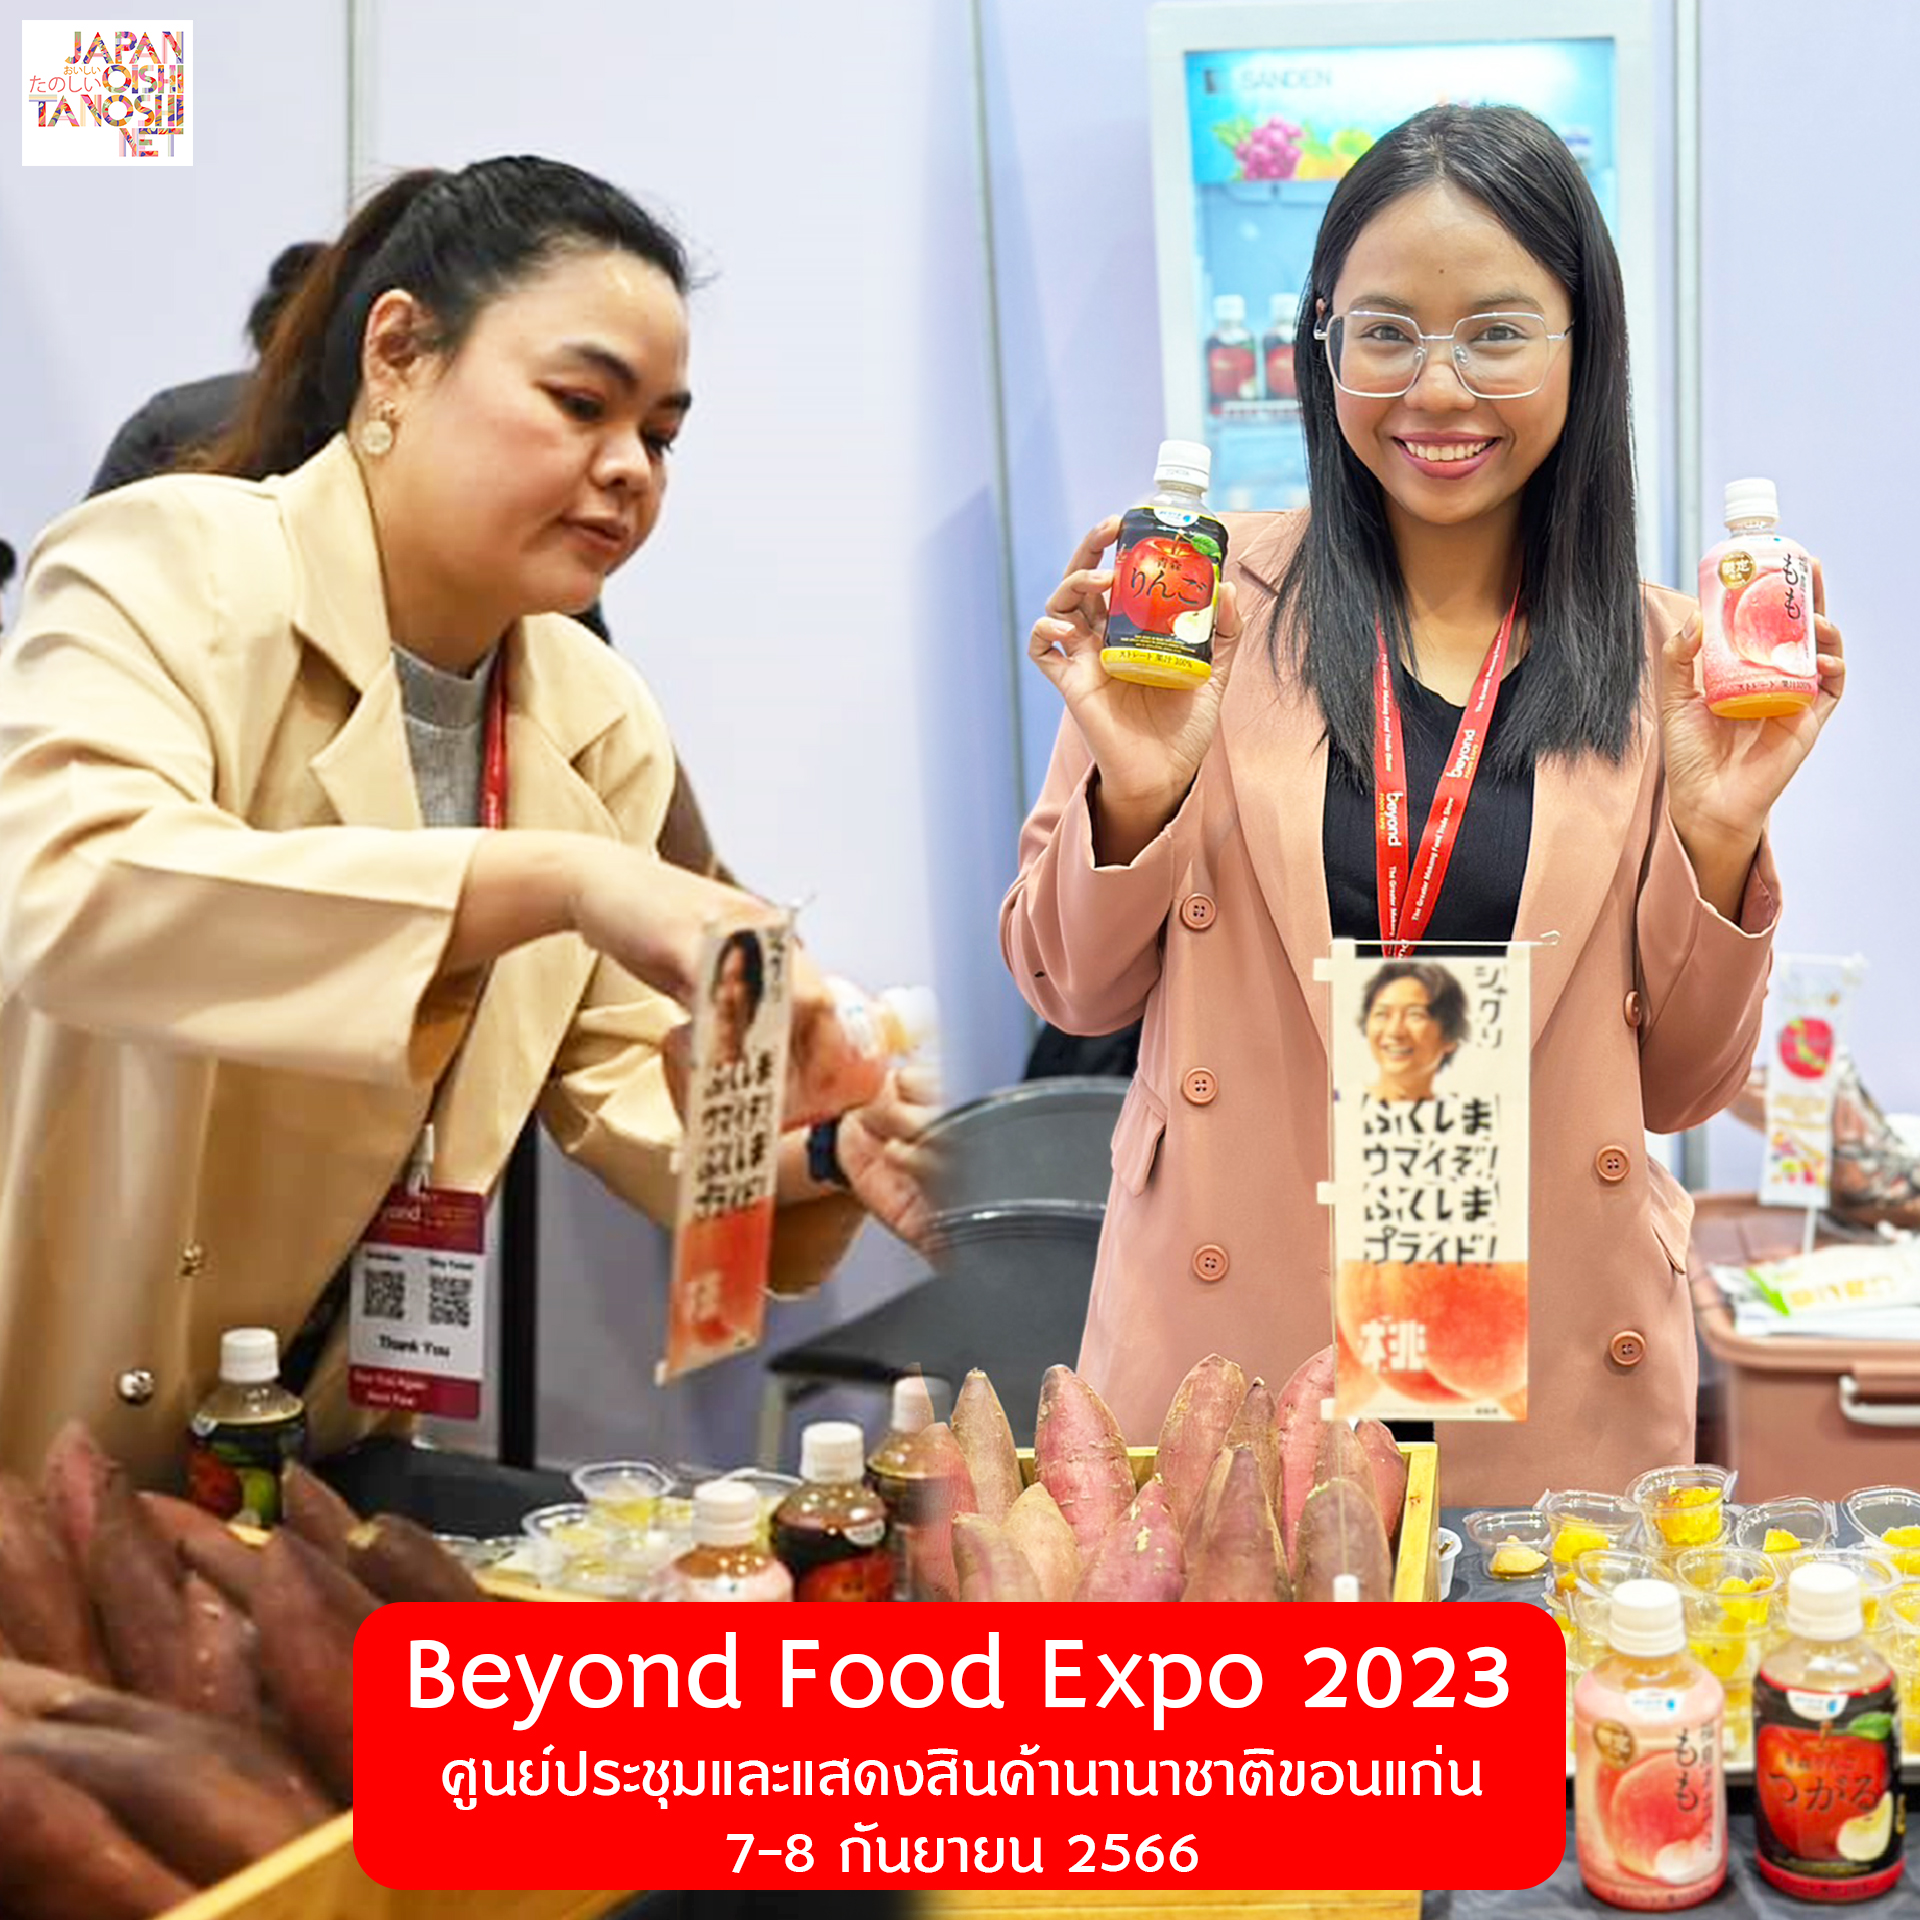 จบไปแล้วสำหรับงาน BEYOND FOOD EXPO 2023 ที่จัดขึ้นเมื่อวันที่ 7-8 กันยายน 2566 ณ ศูนย์ประชุมและแสดงสินค้านานาชาติขอนแก่น